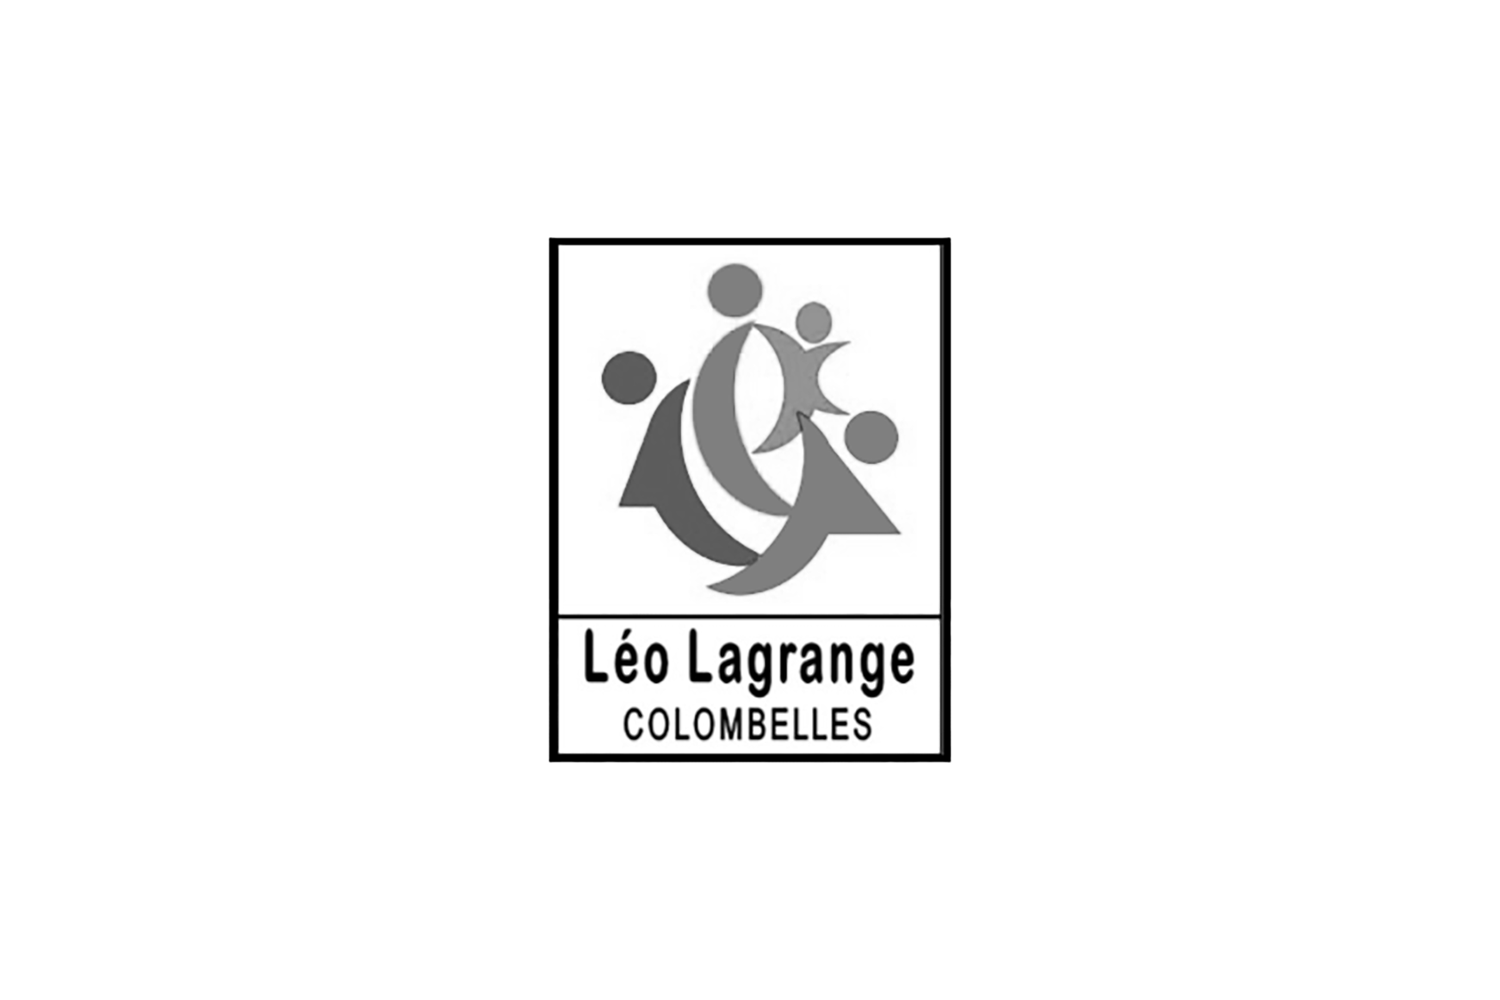 Léo Lagrange Colombelles